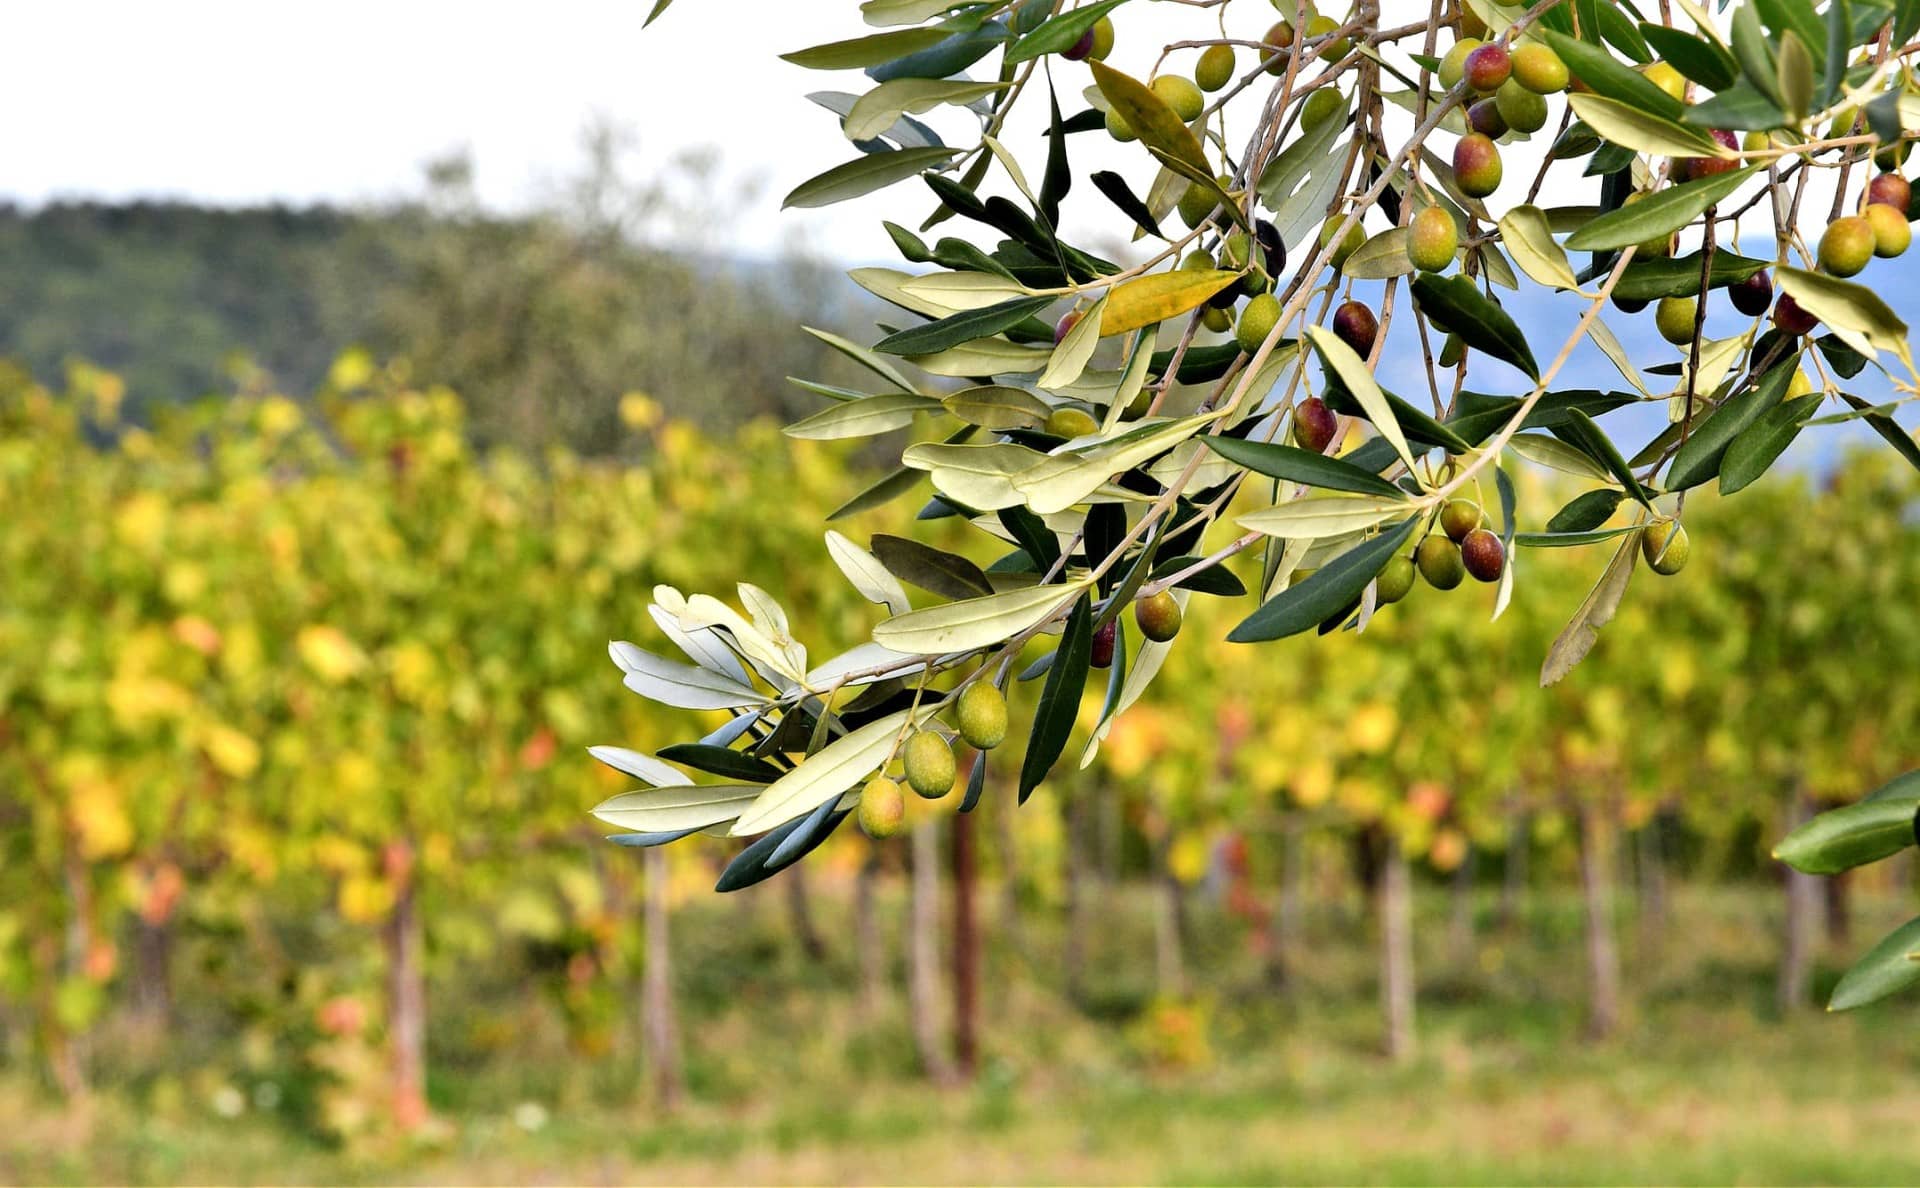 Live-Welt-Olivenöl-Wettbewerbsergebnisse-Live-Updates-Olivenöl-Zeiten